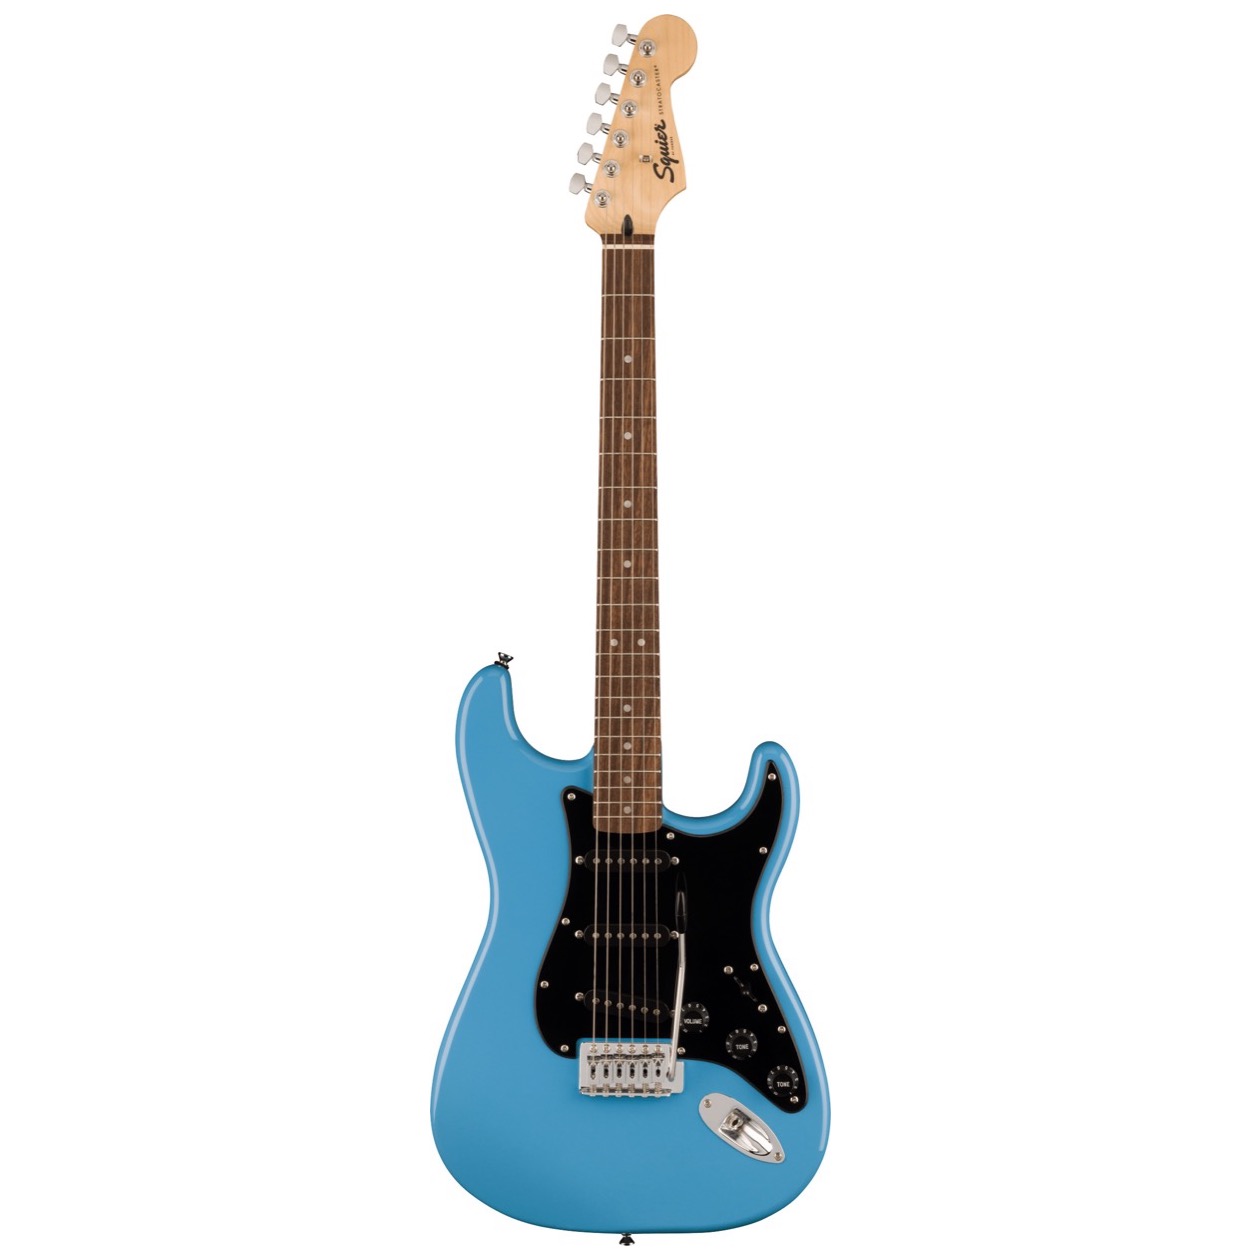 Fender Squier Sonic Stratocaster, Laurel Fingerboard, Black Pickguard, California Blue NIEUW VOOR 2023